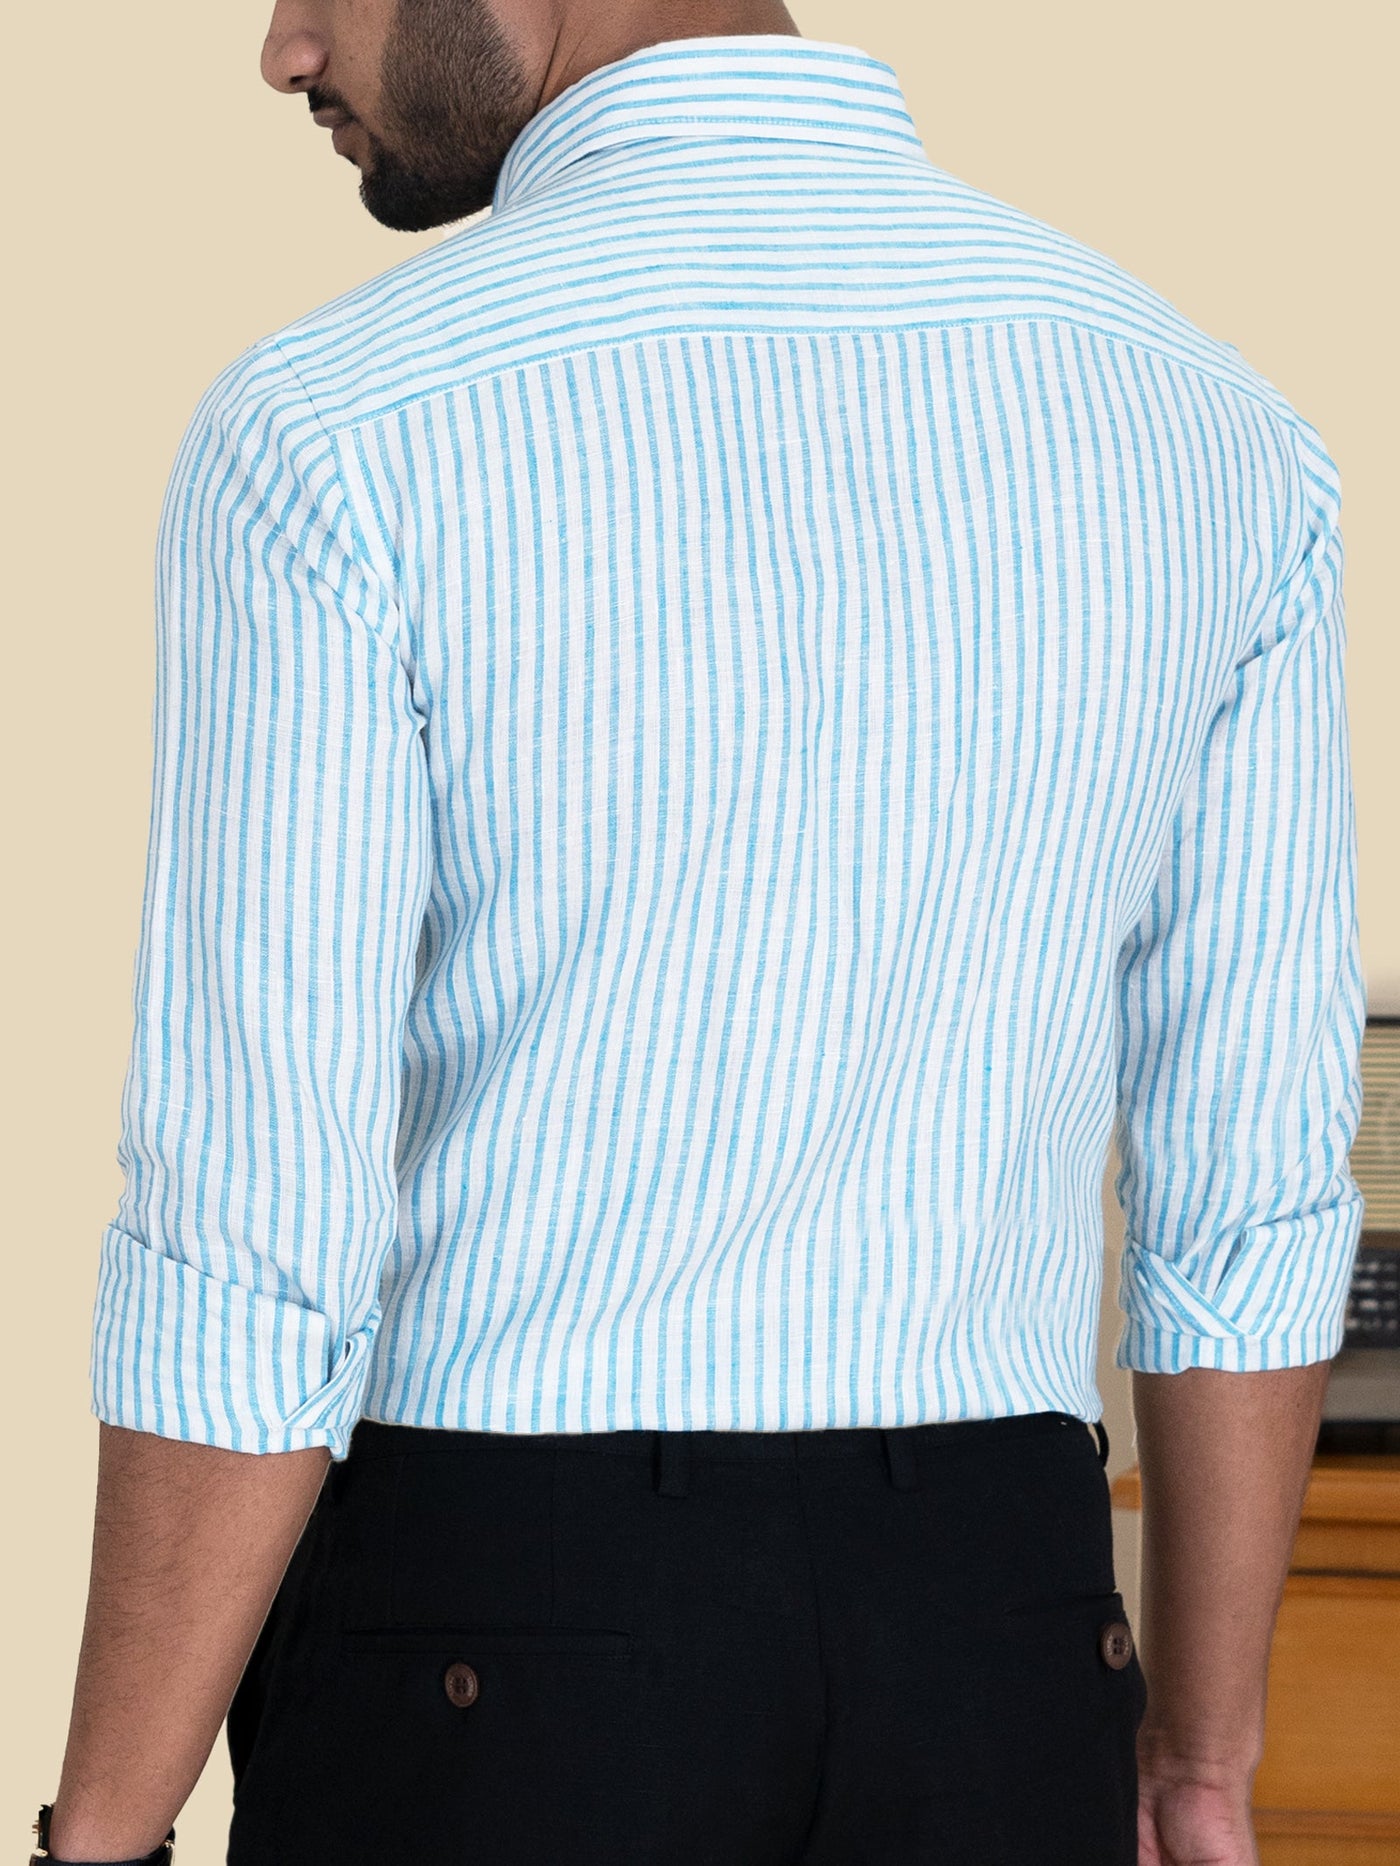 Harvey - Pure Linen Full Sleeve Shirt - Blue & White Stripes | Rescue